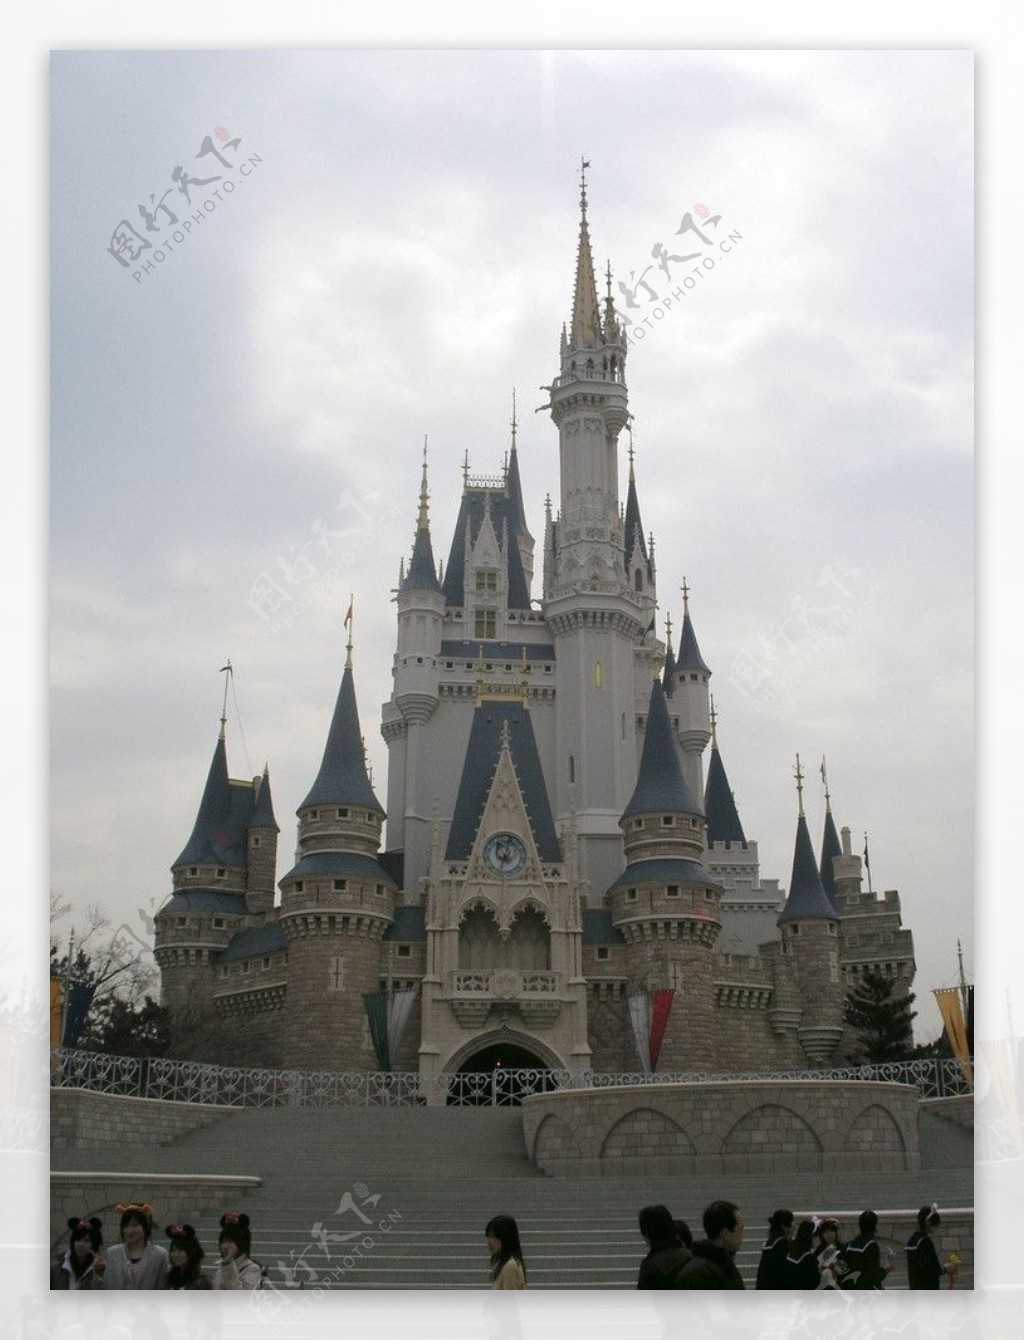 日本迪士尼乐园城堡图片